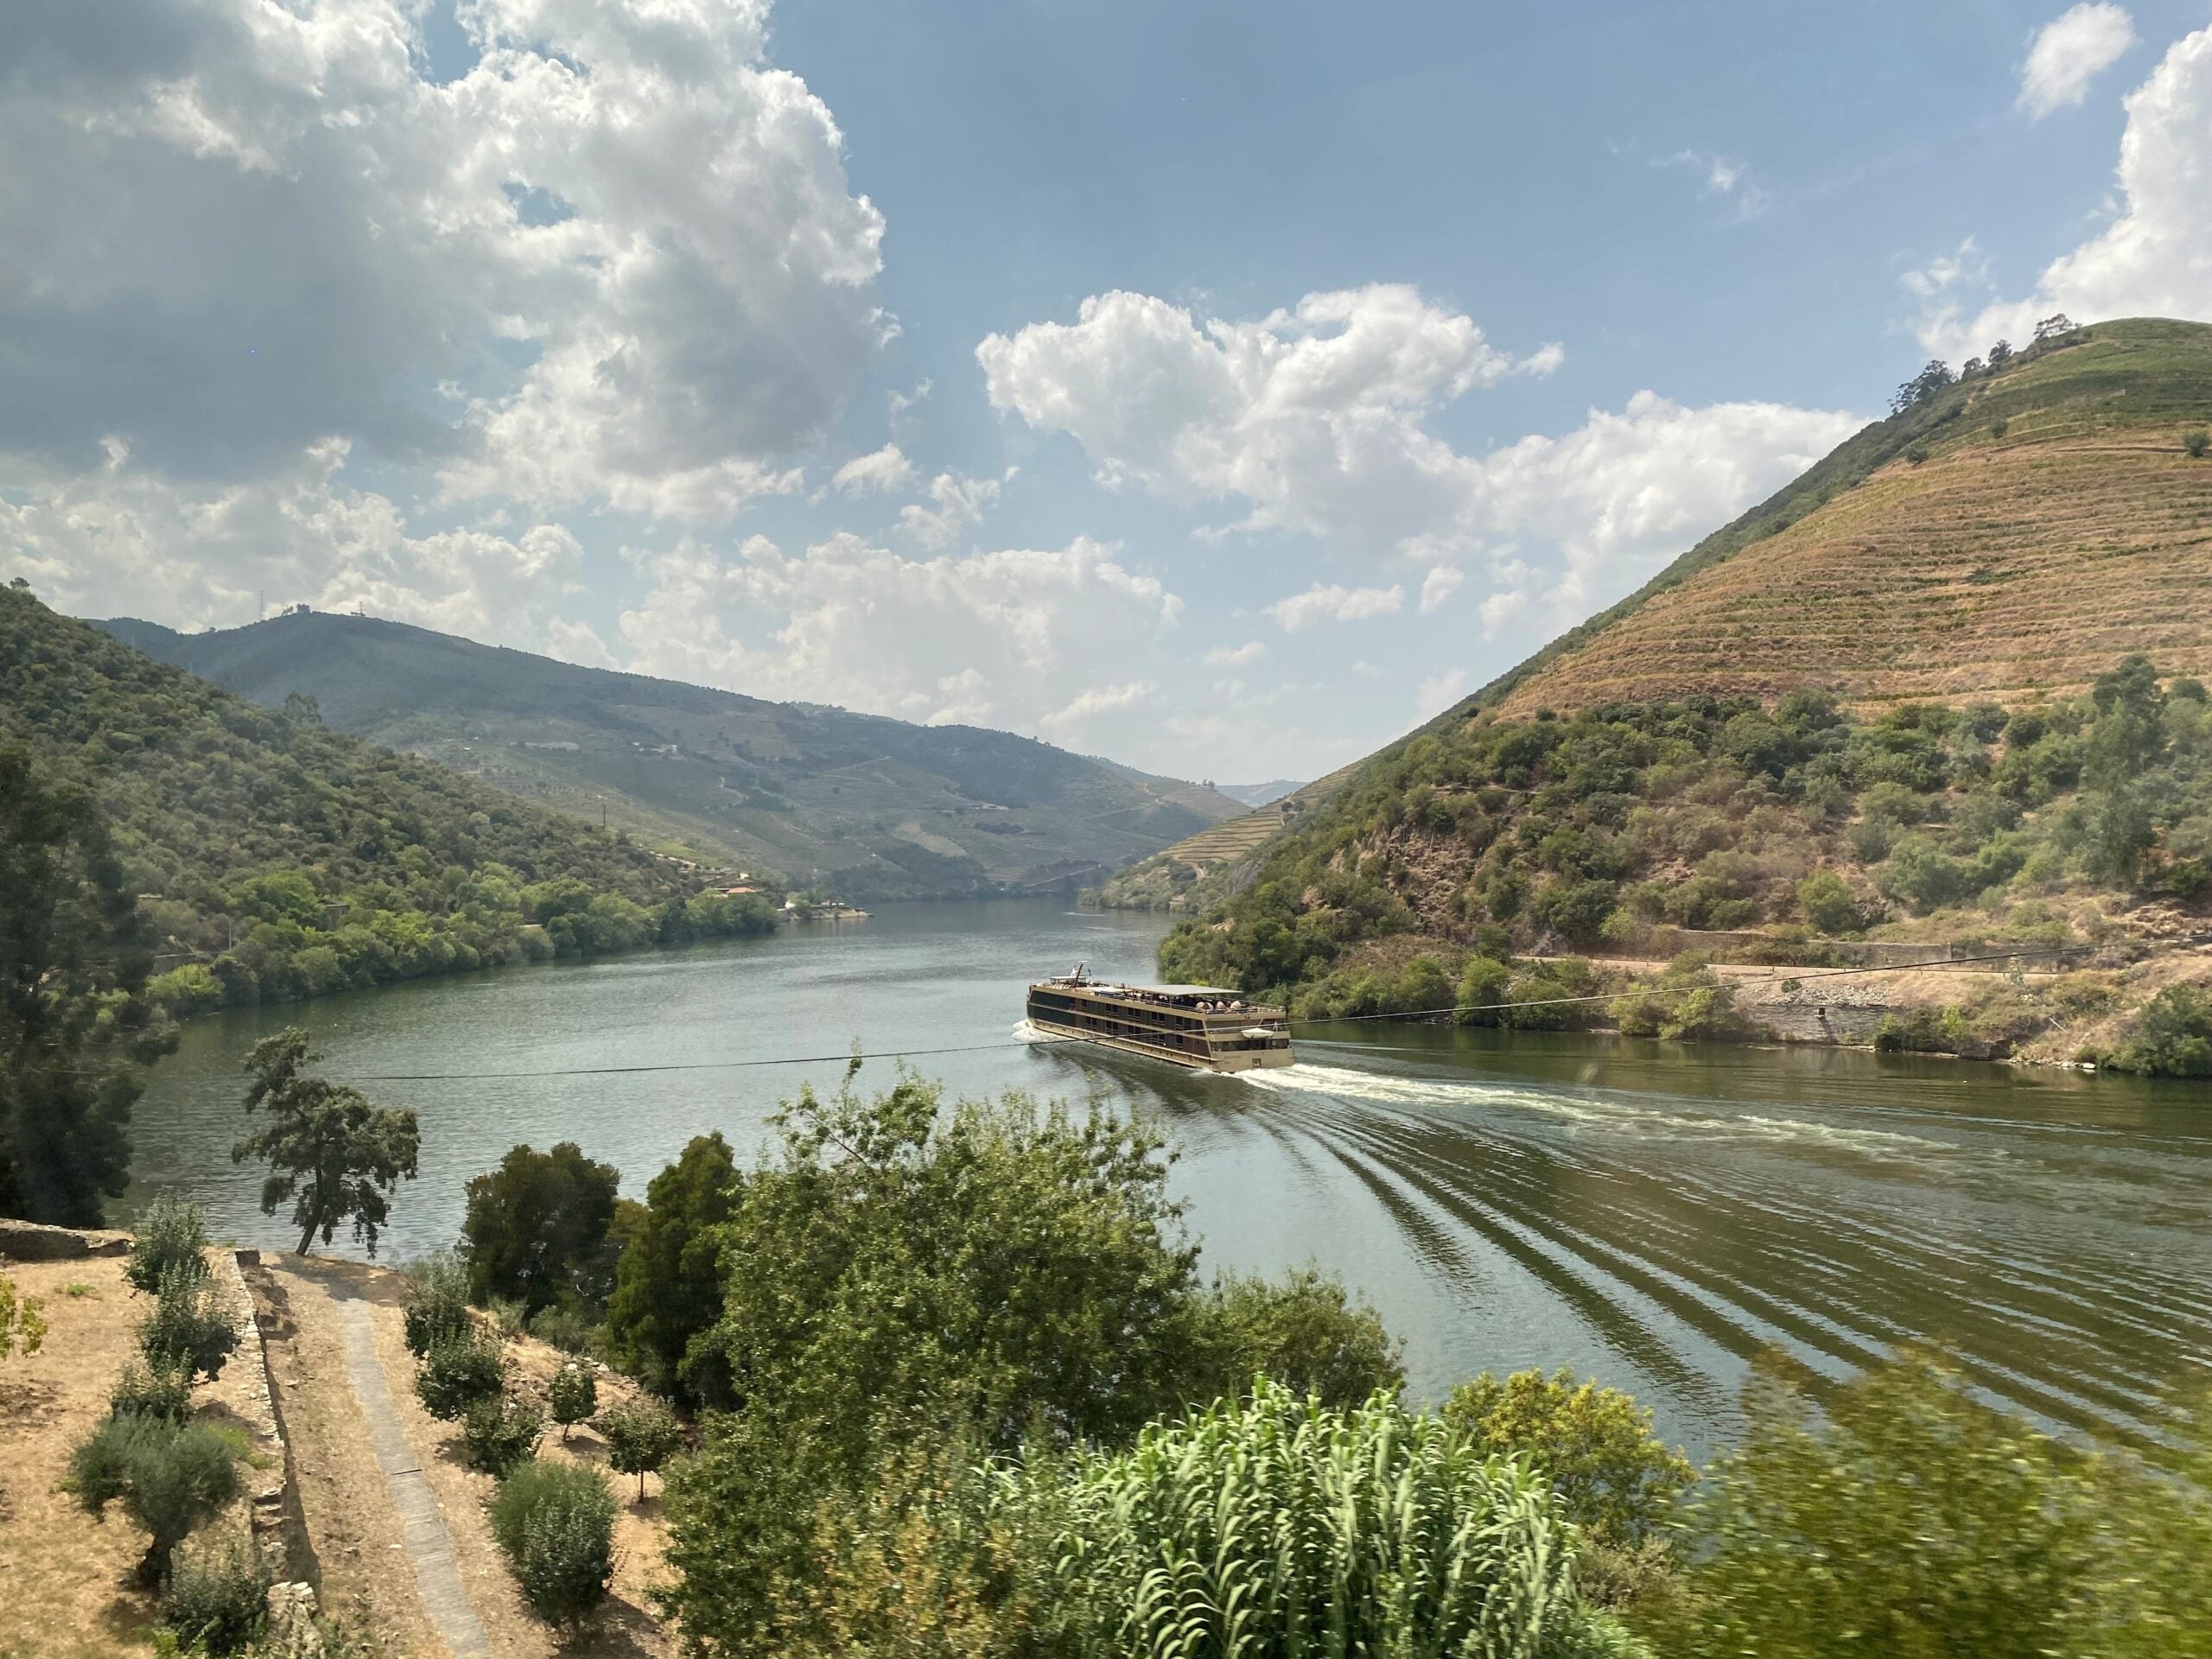 AmaDouro on the Douro River